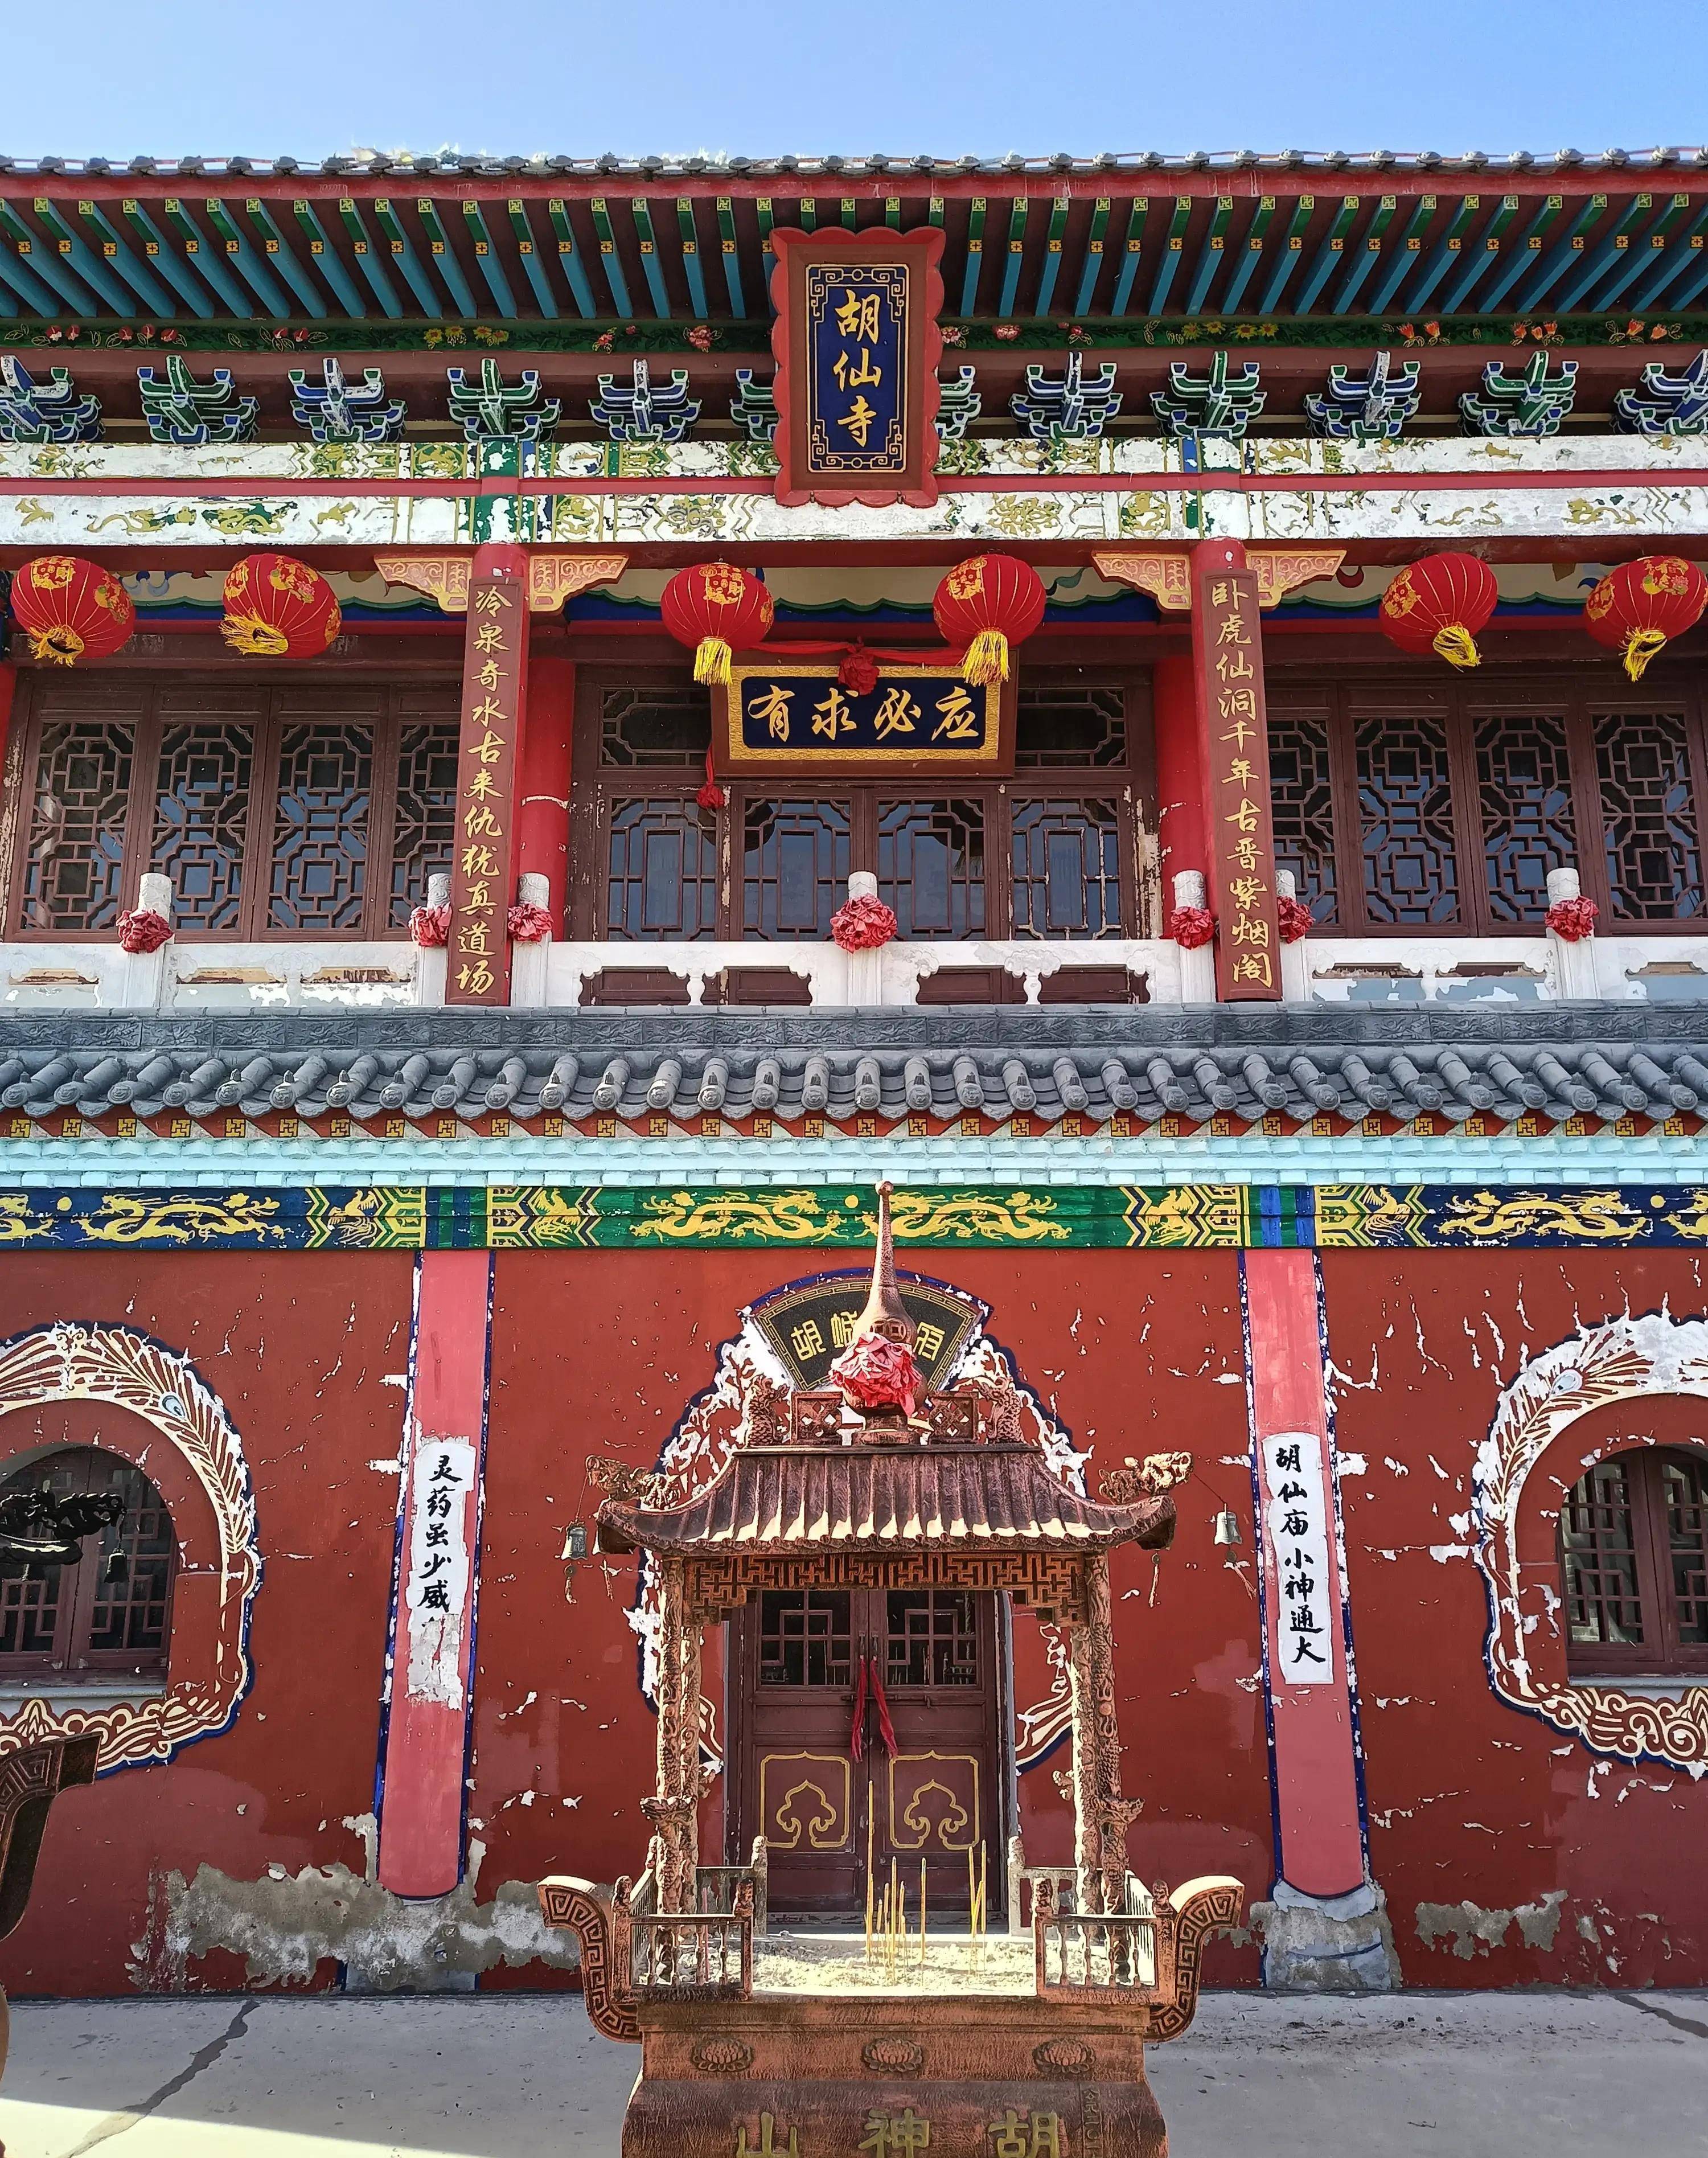 2000年在狐仙庙旧址的基础上,反造五台山梵仙山,一模一样又修建了一座